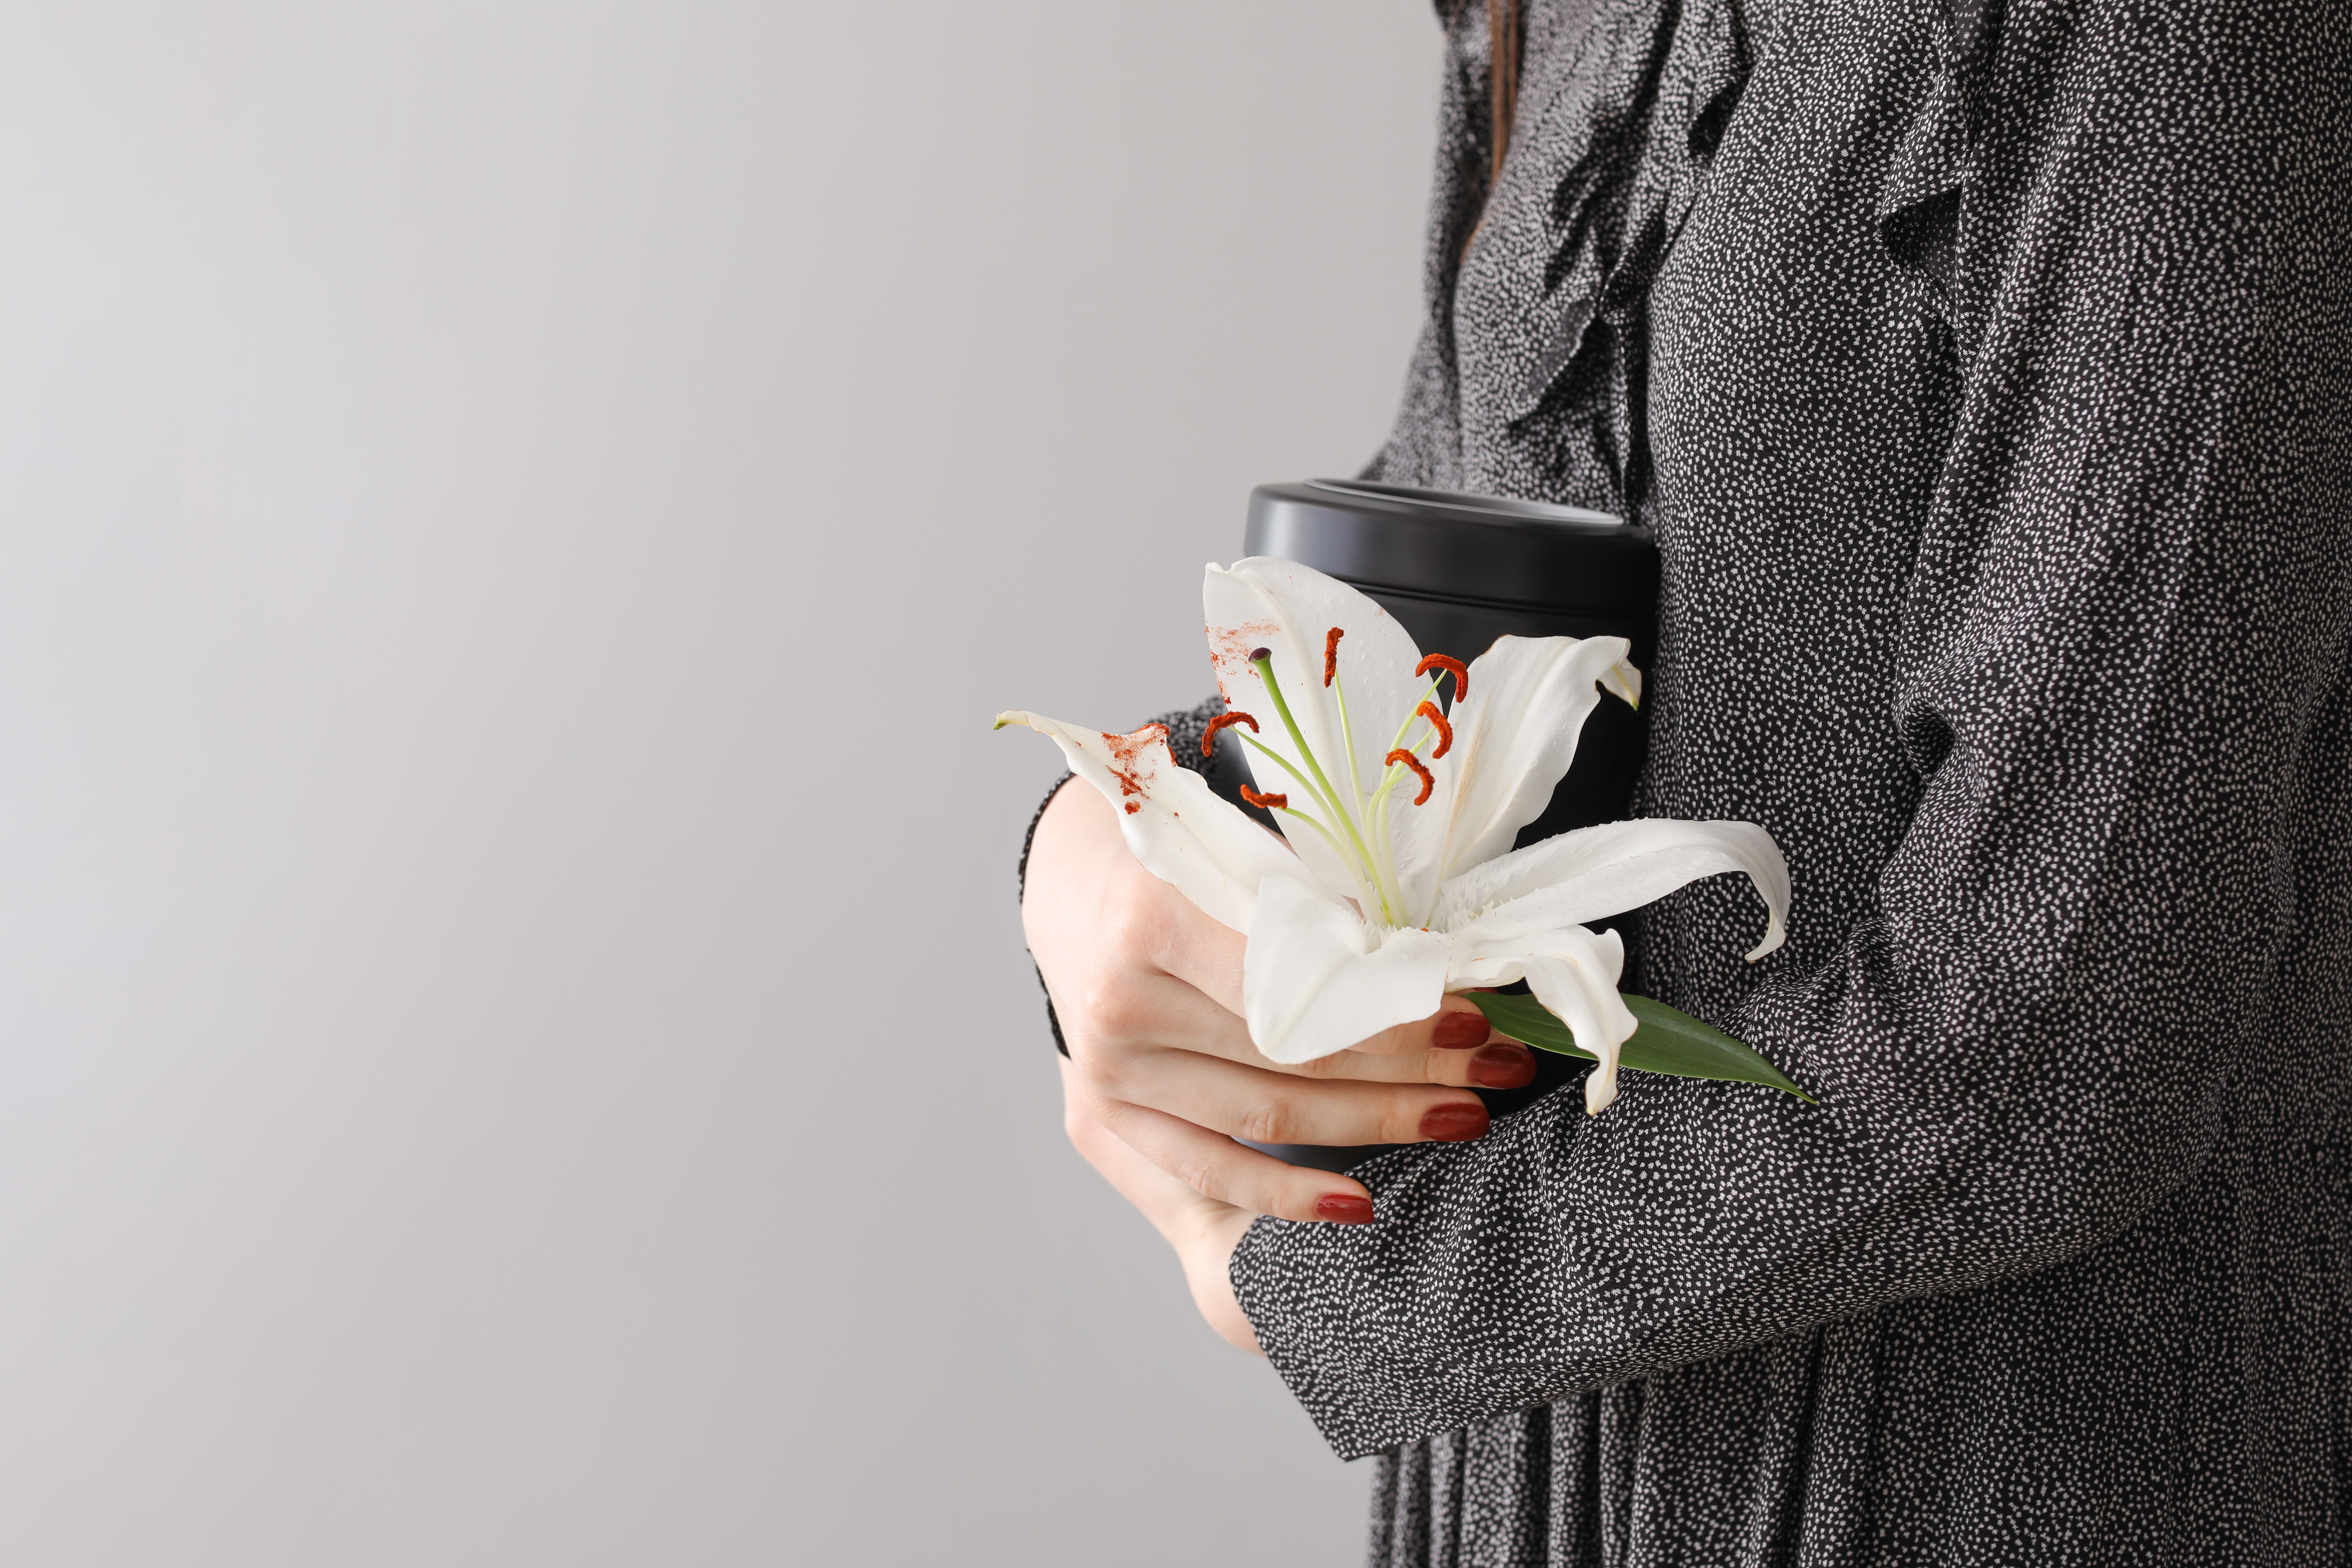 Une femme tenant une urne et une fleur de lys | Source : Shutterstock